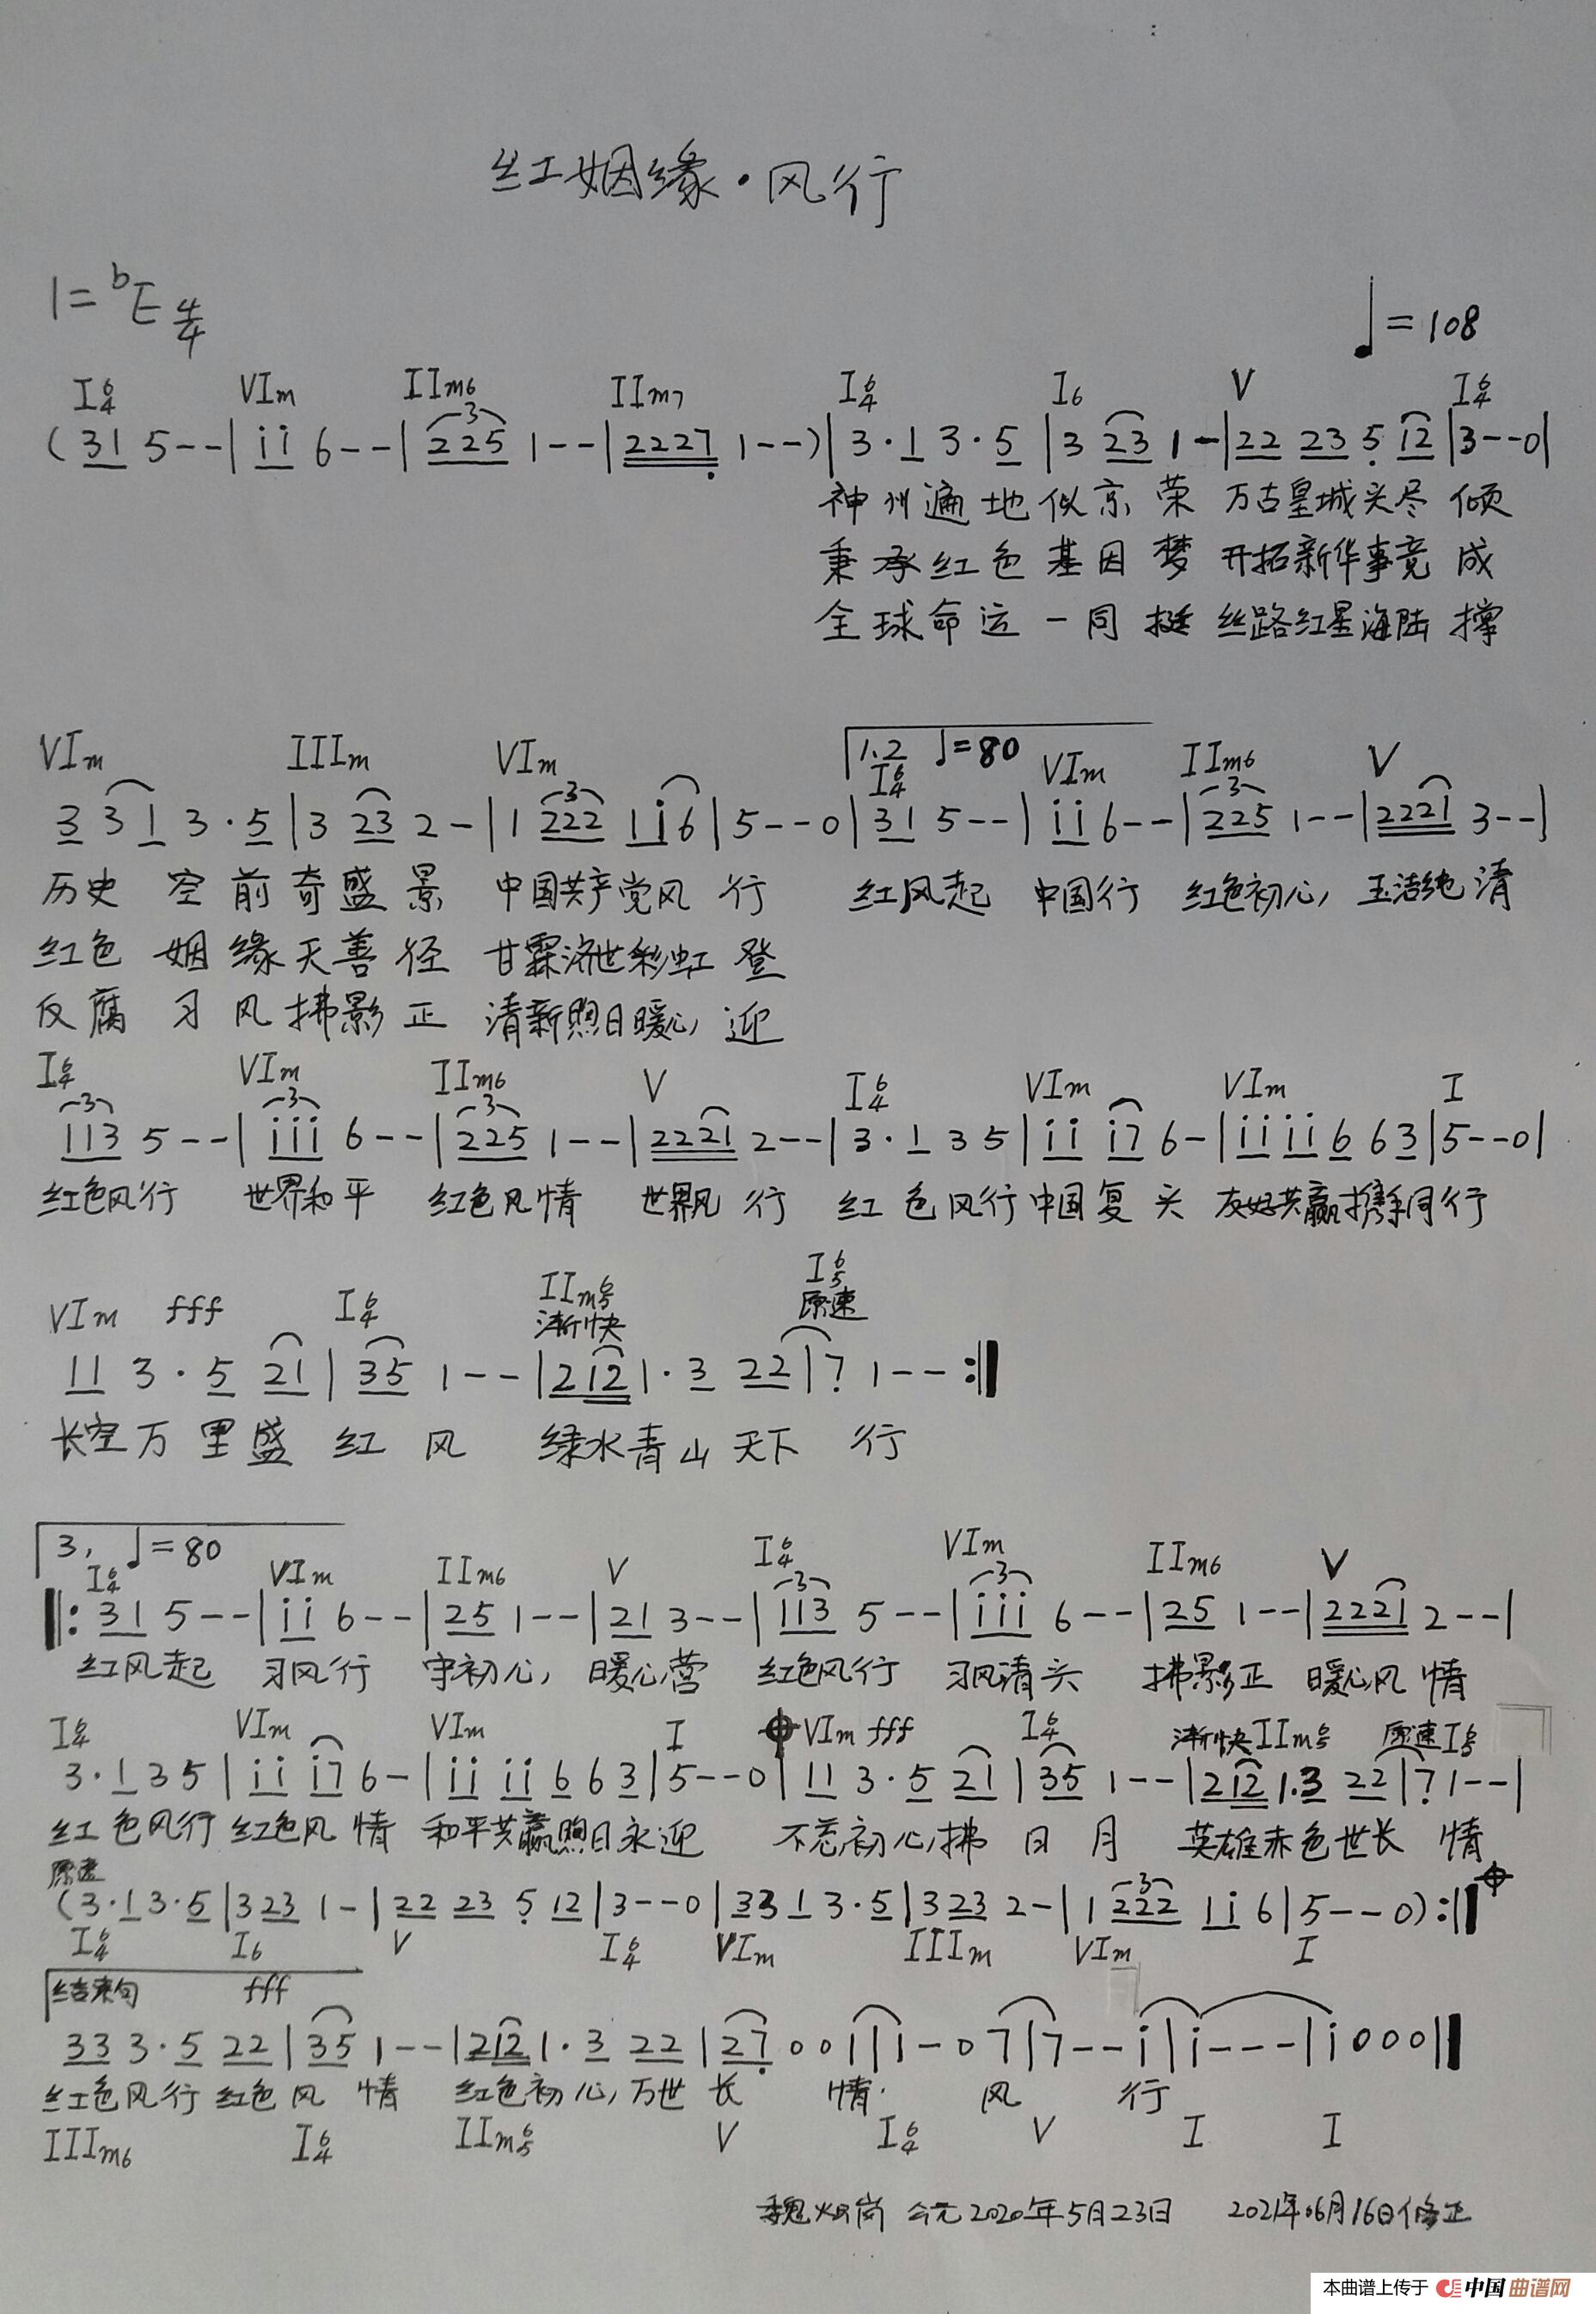 恩彩的房间- 插曲-钢琴谱-最全钢琴谱